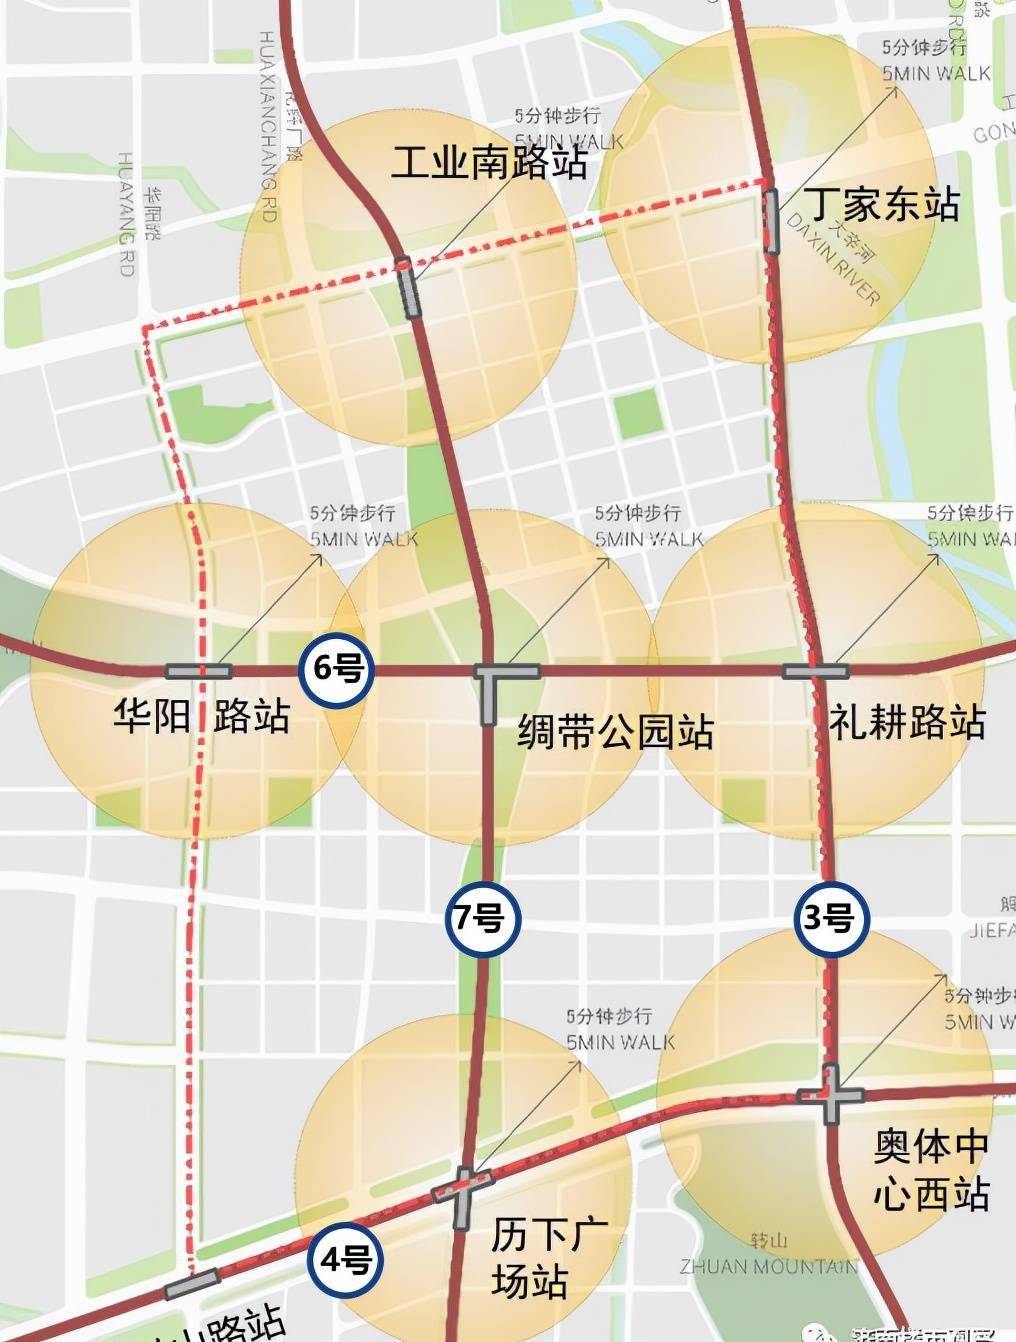 我们展开济南的地铁网络规划,其线路分布最密集的区域就在济南cbd!